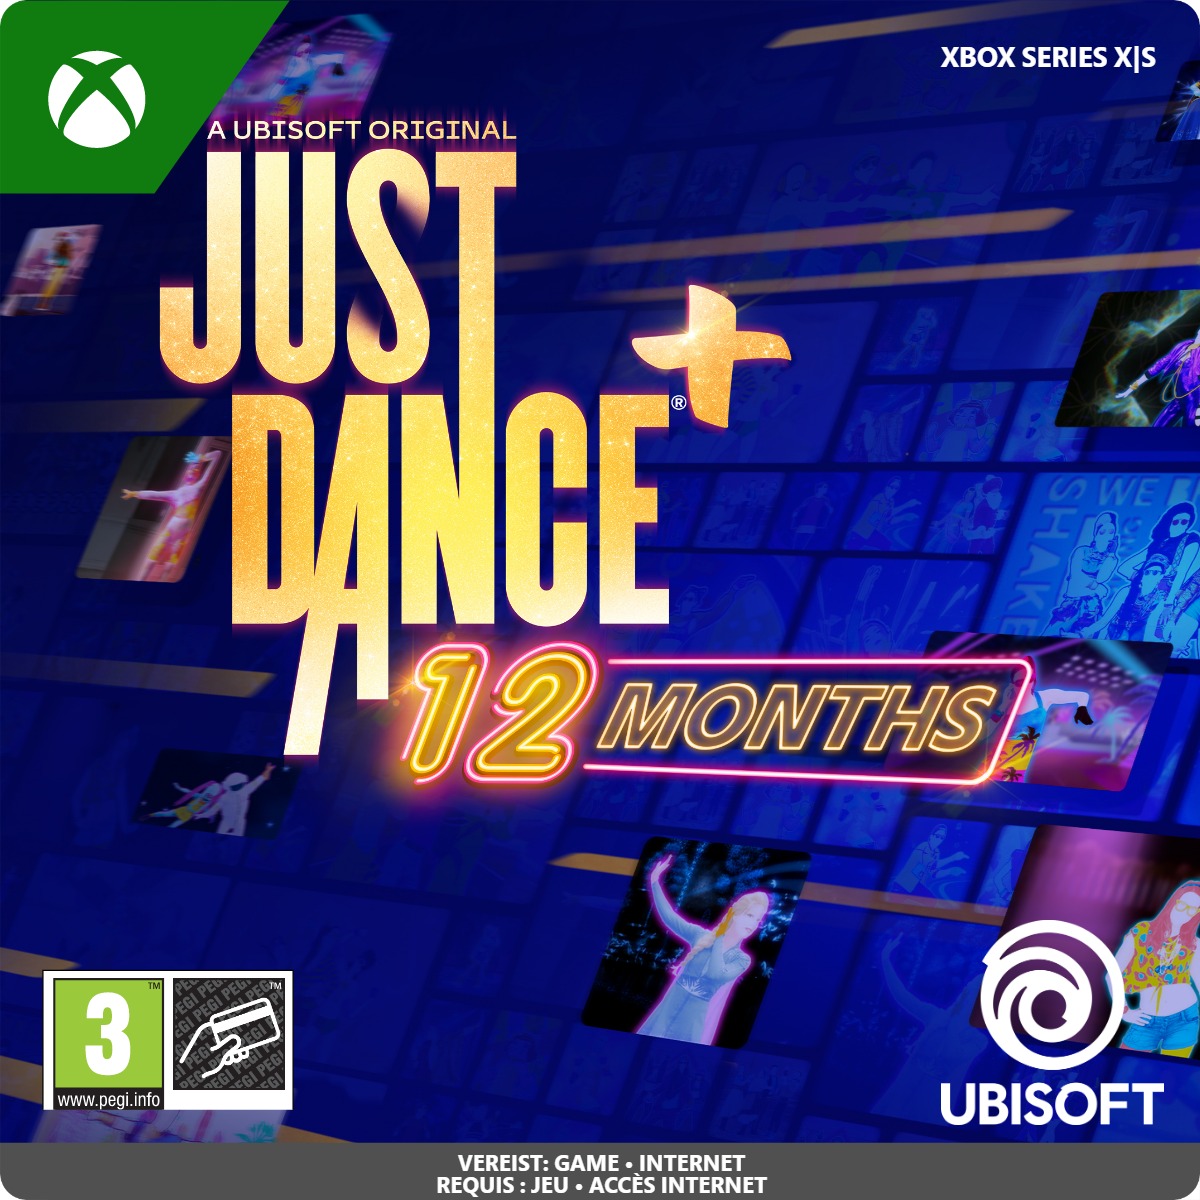 Just Dance Plus 12 months